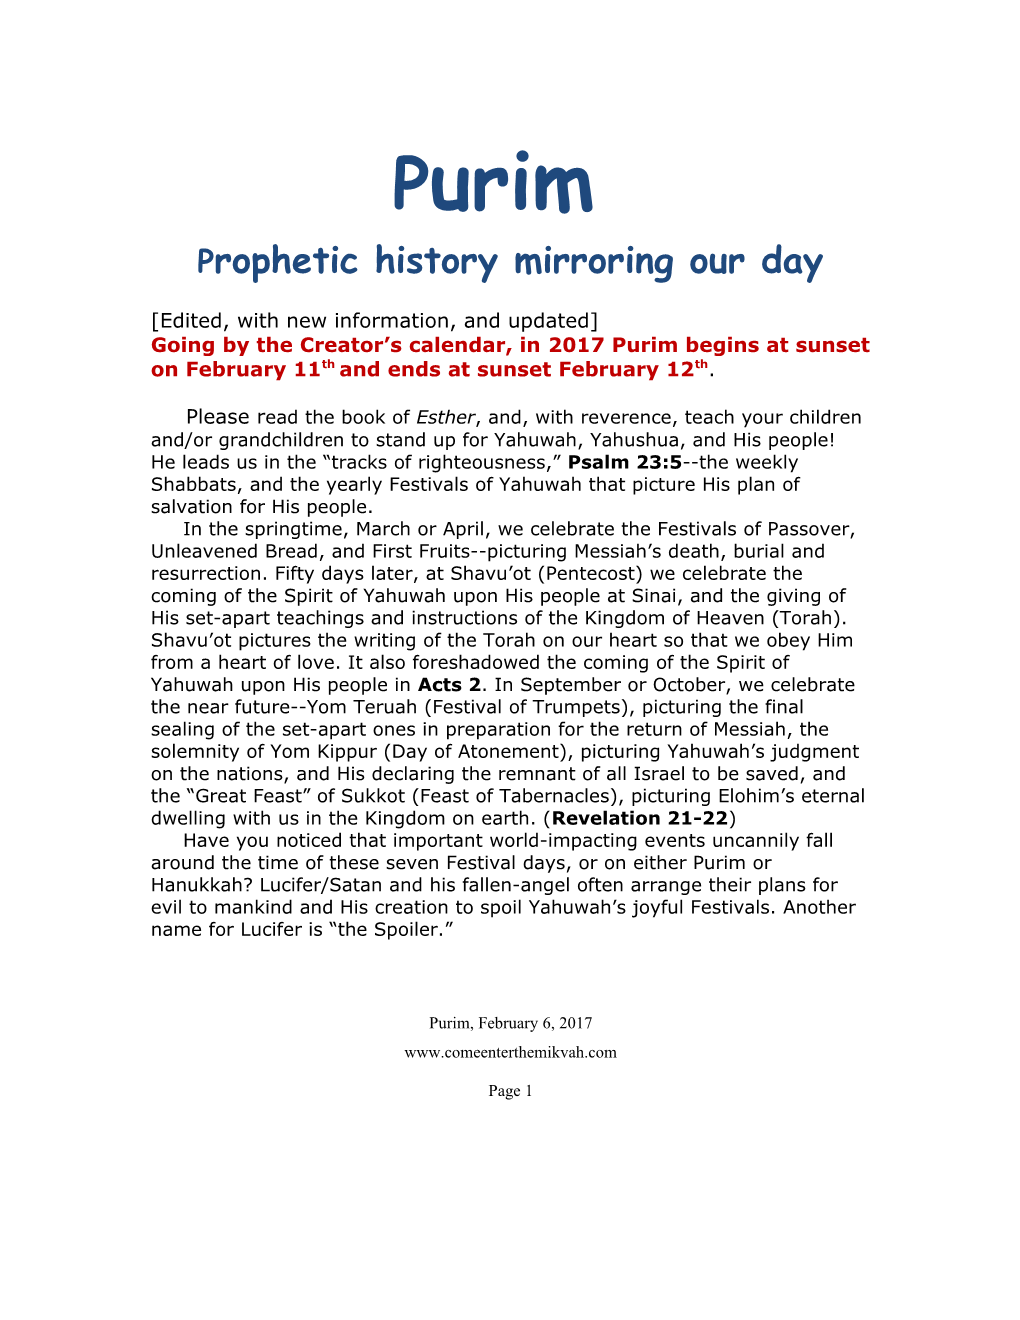 Prophetic History Mirroringour Day